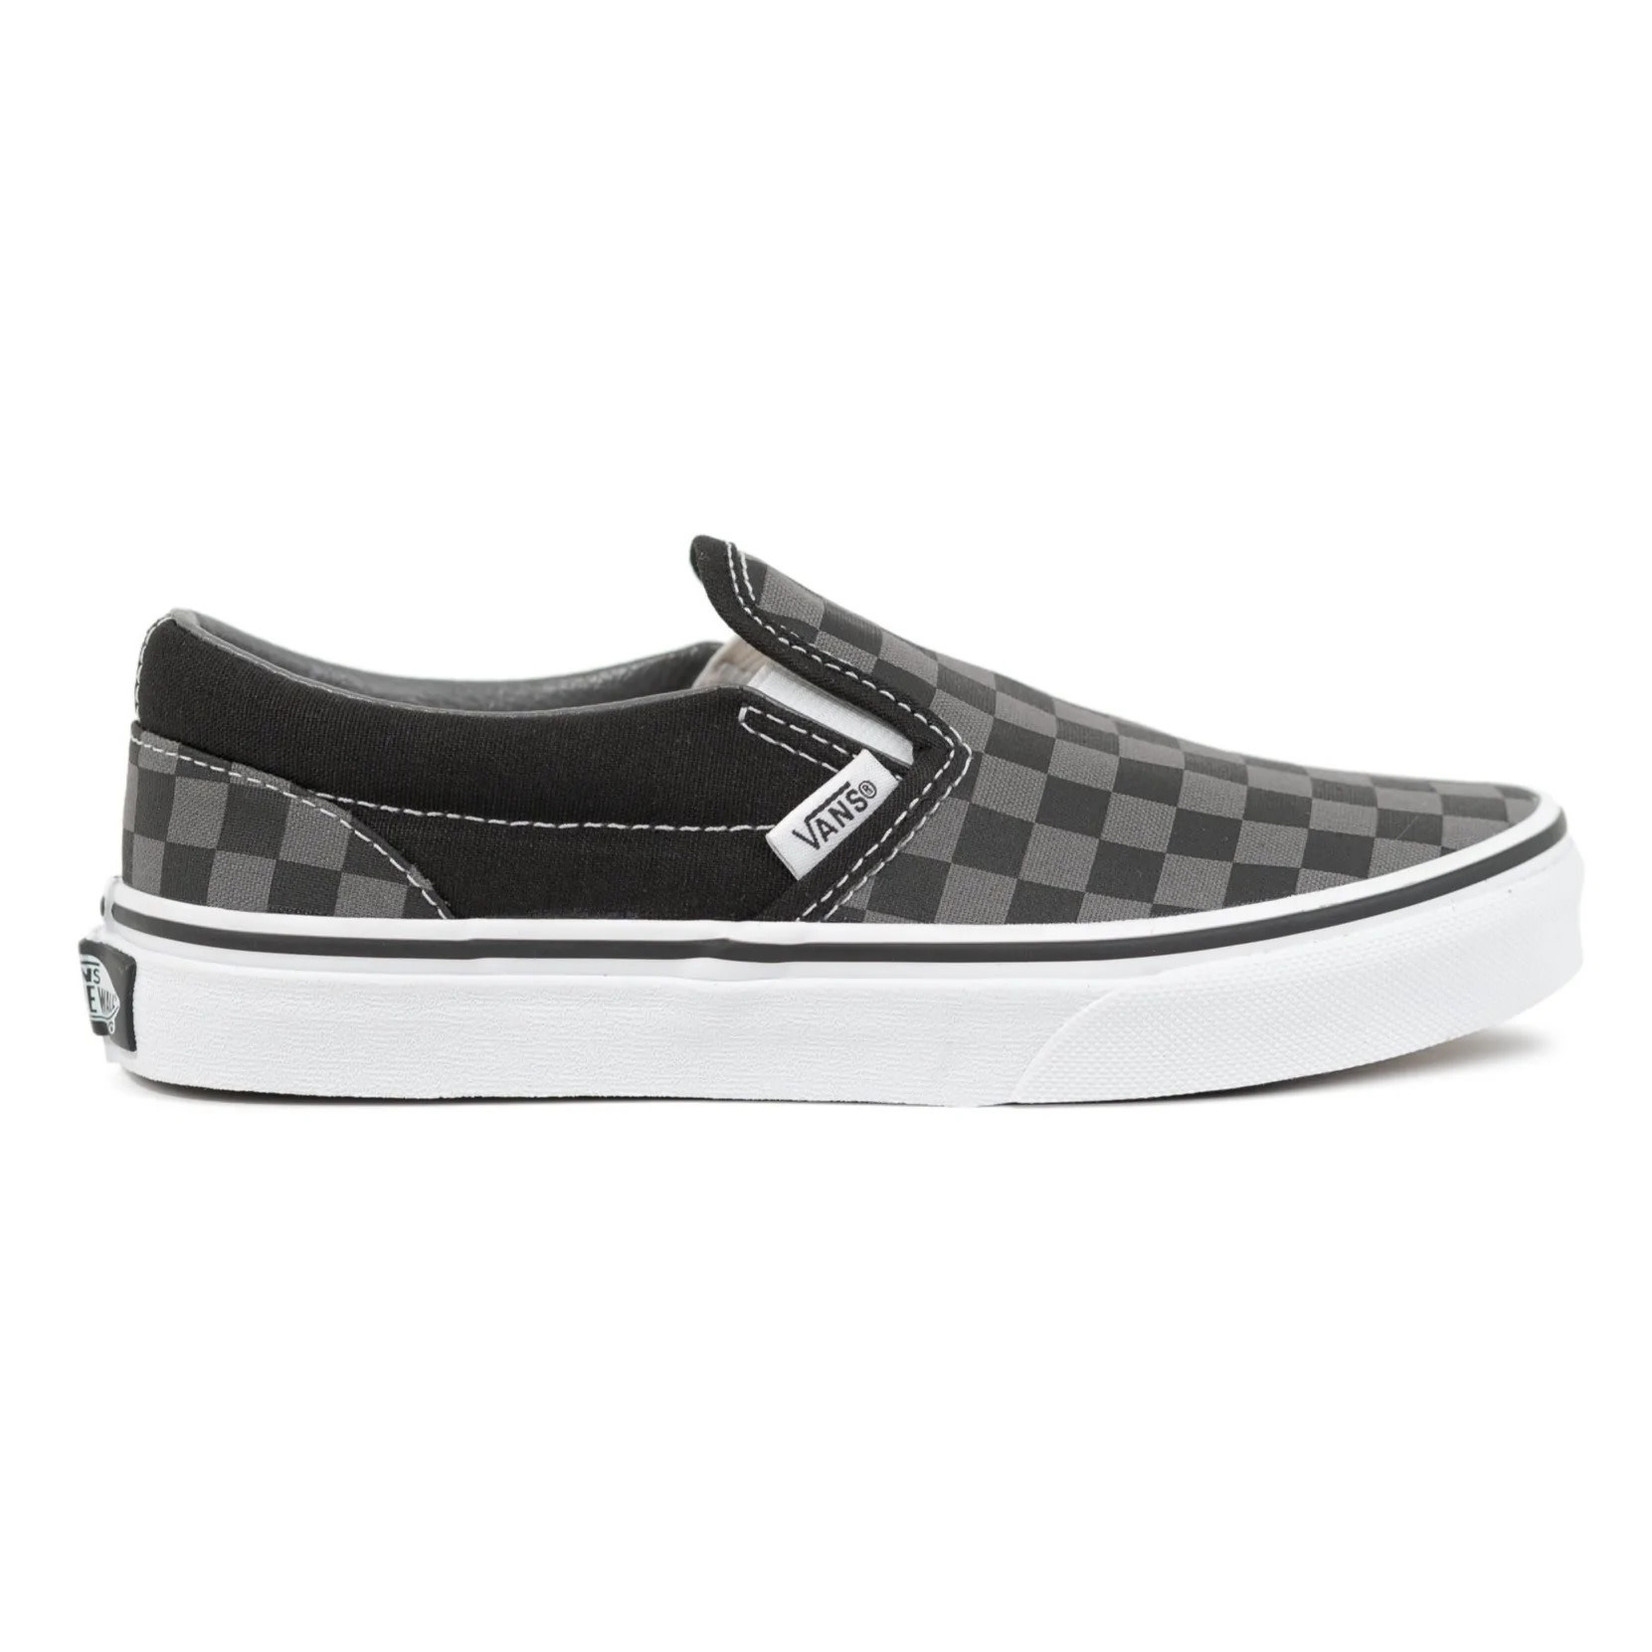 Vans Vans Classic Slip-On Youth Skate Shoes - Checker/Black/Pewter -